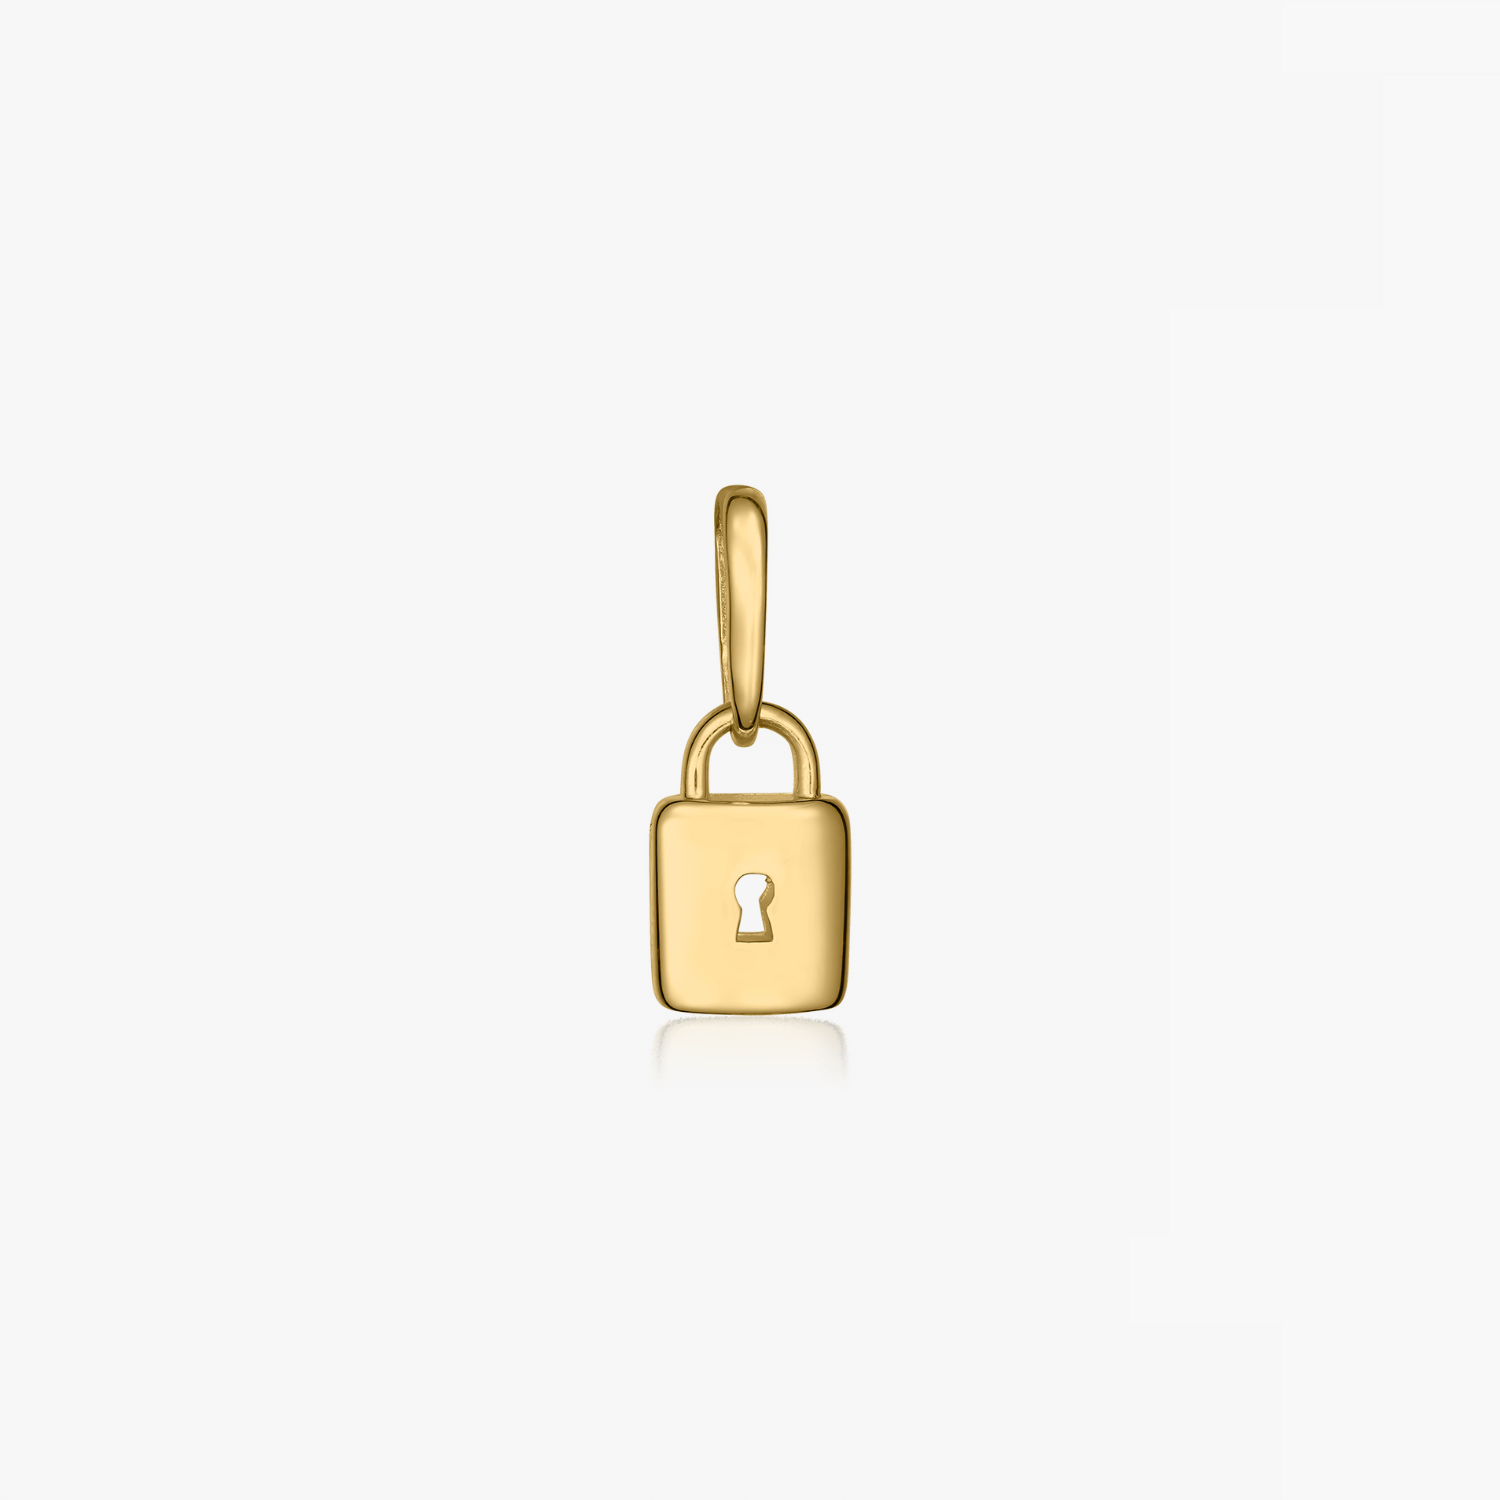 Secret gold pendant